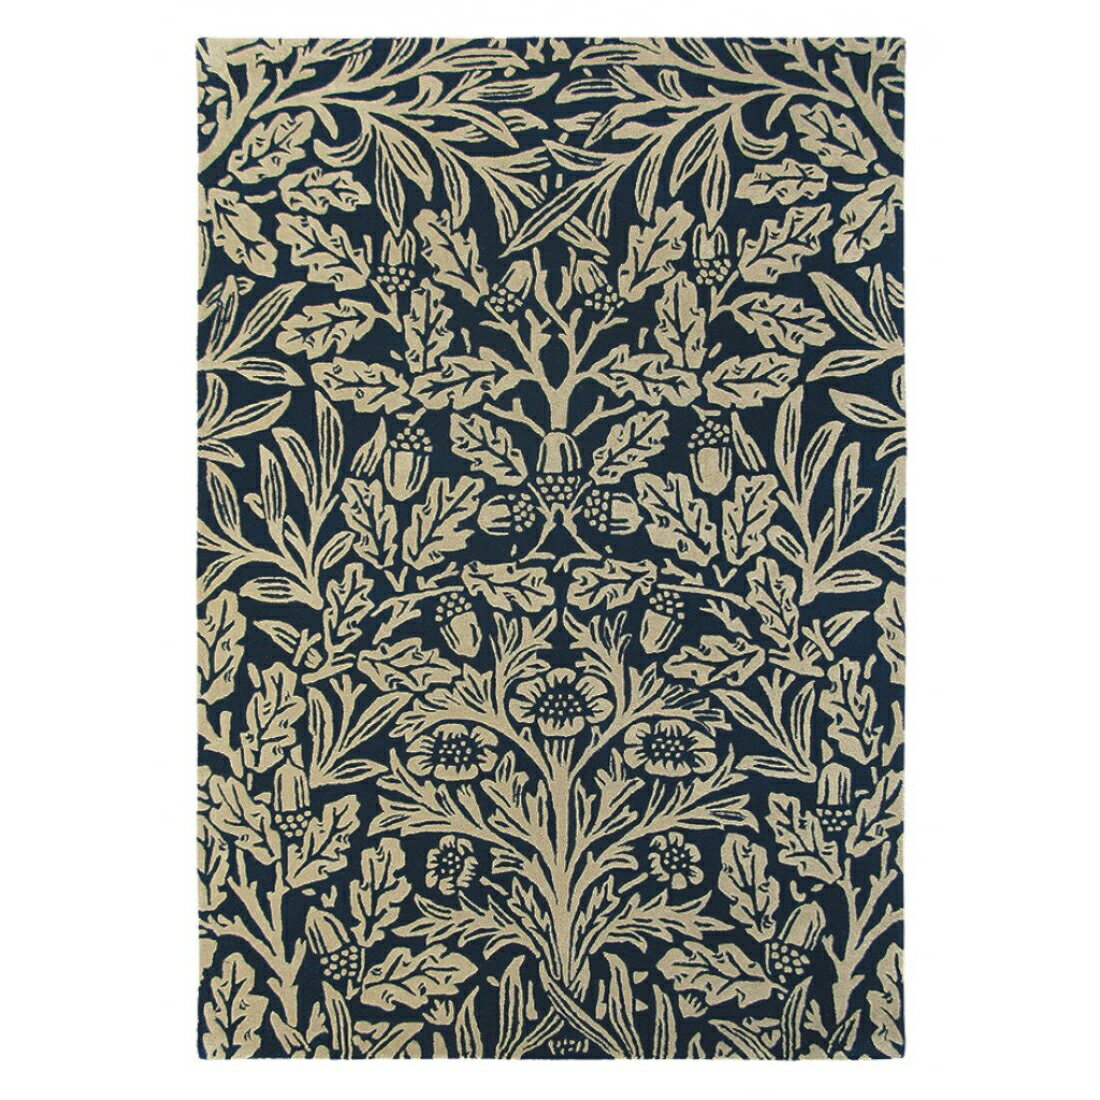 英國Morris&Co羊毛地毯 OAK 27908  古典圖騰 經典優雅